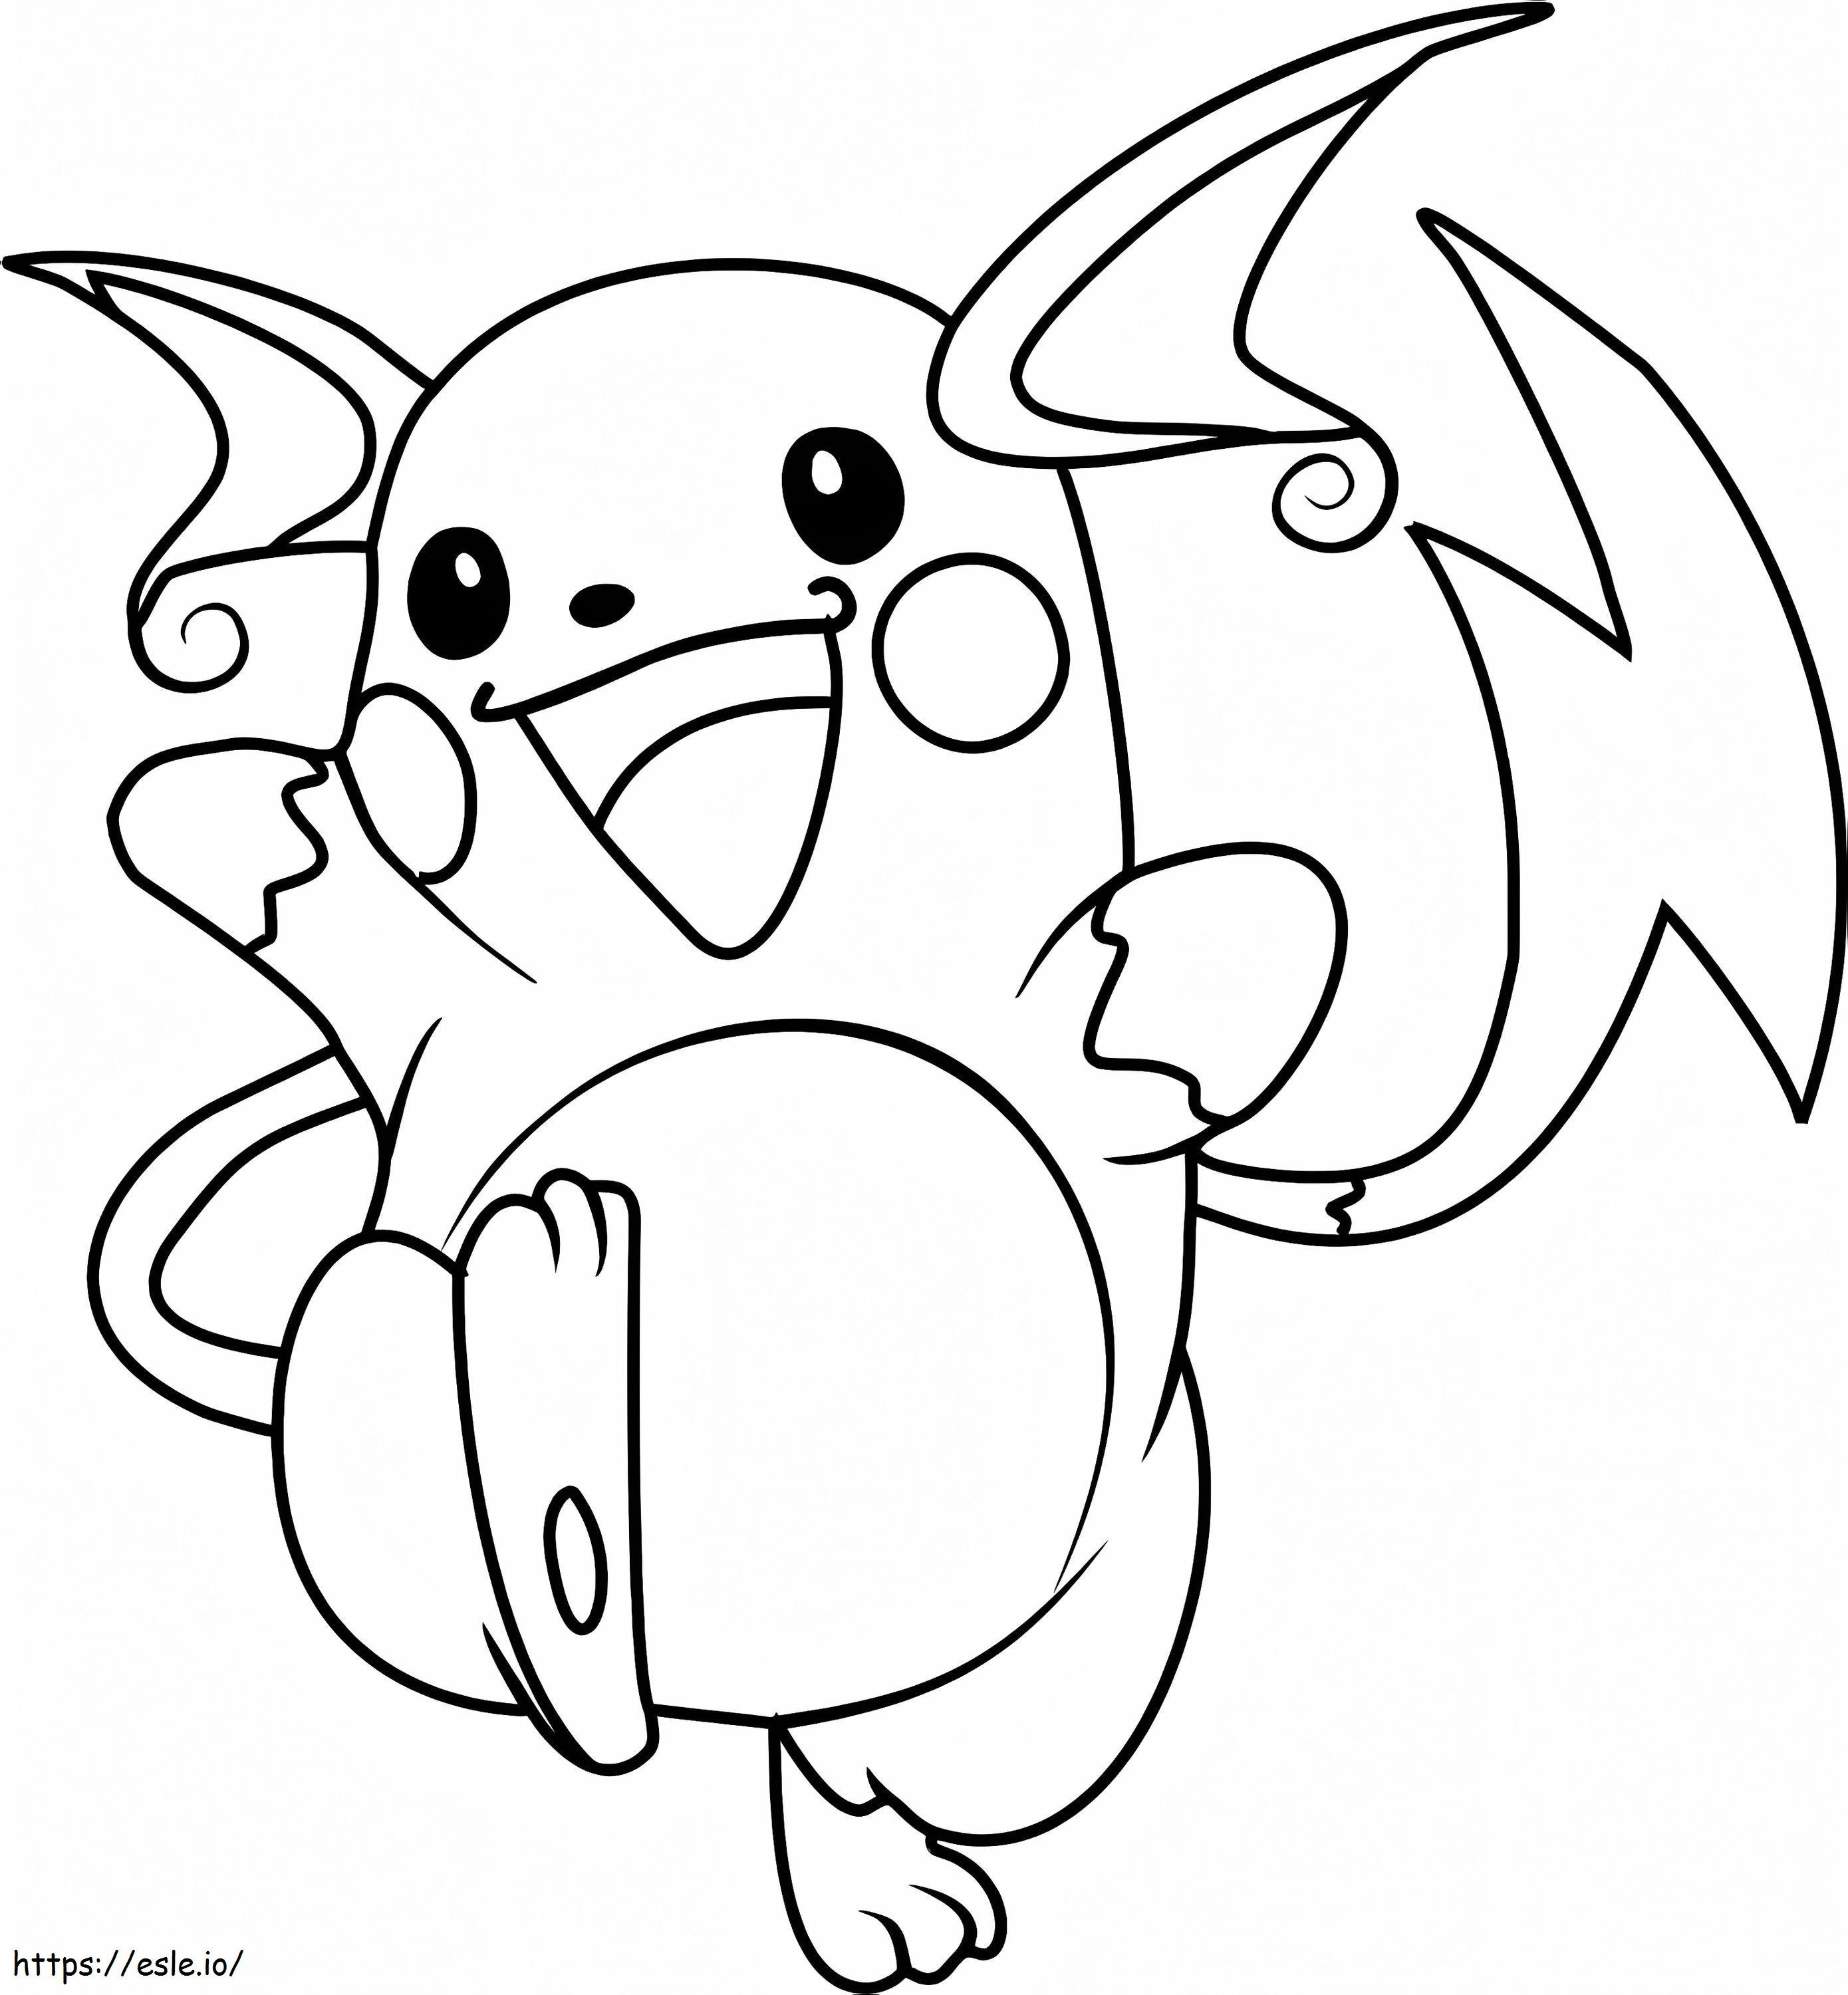 Coloriage Pokemon Raichu à imprimer dessin